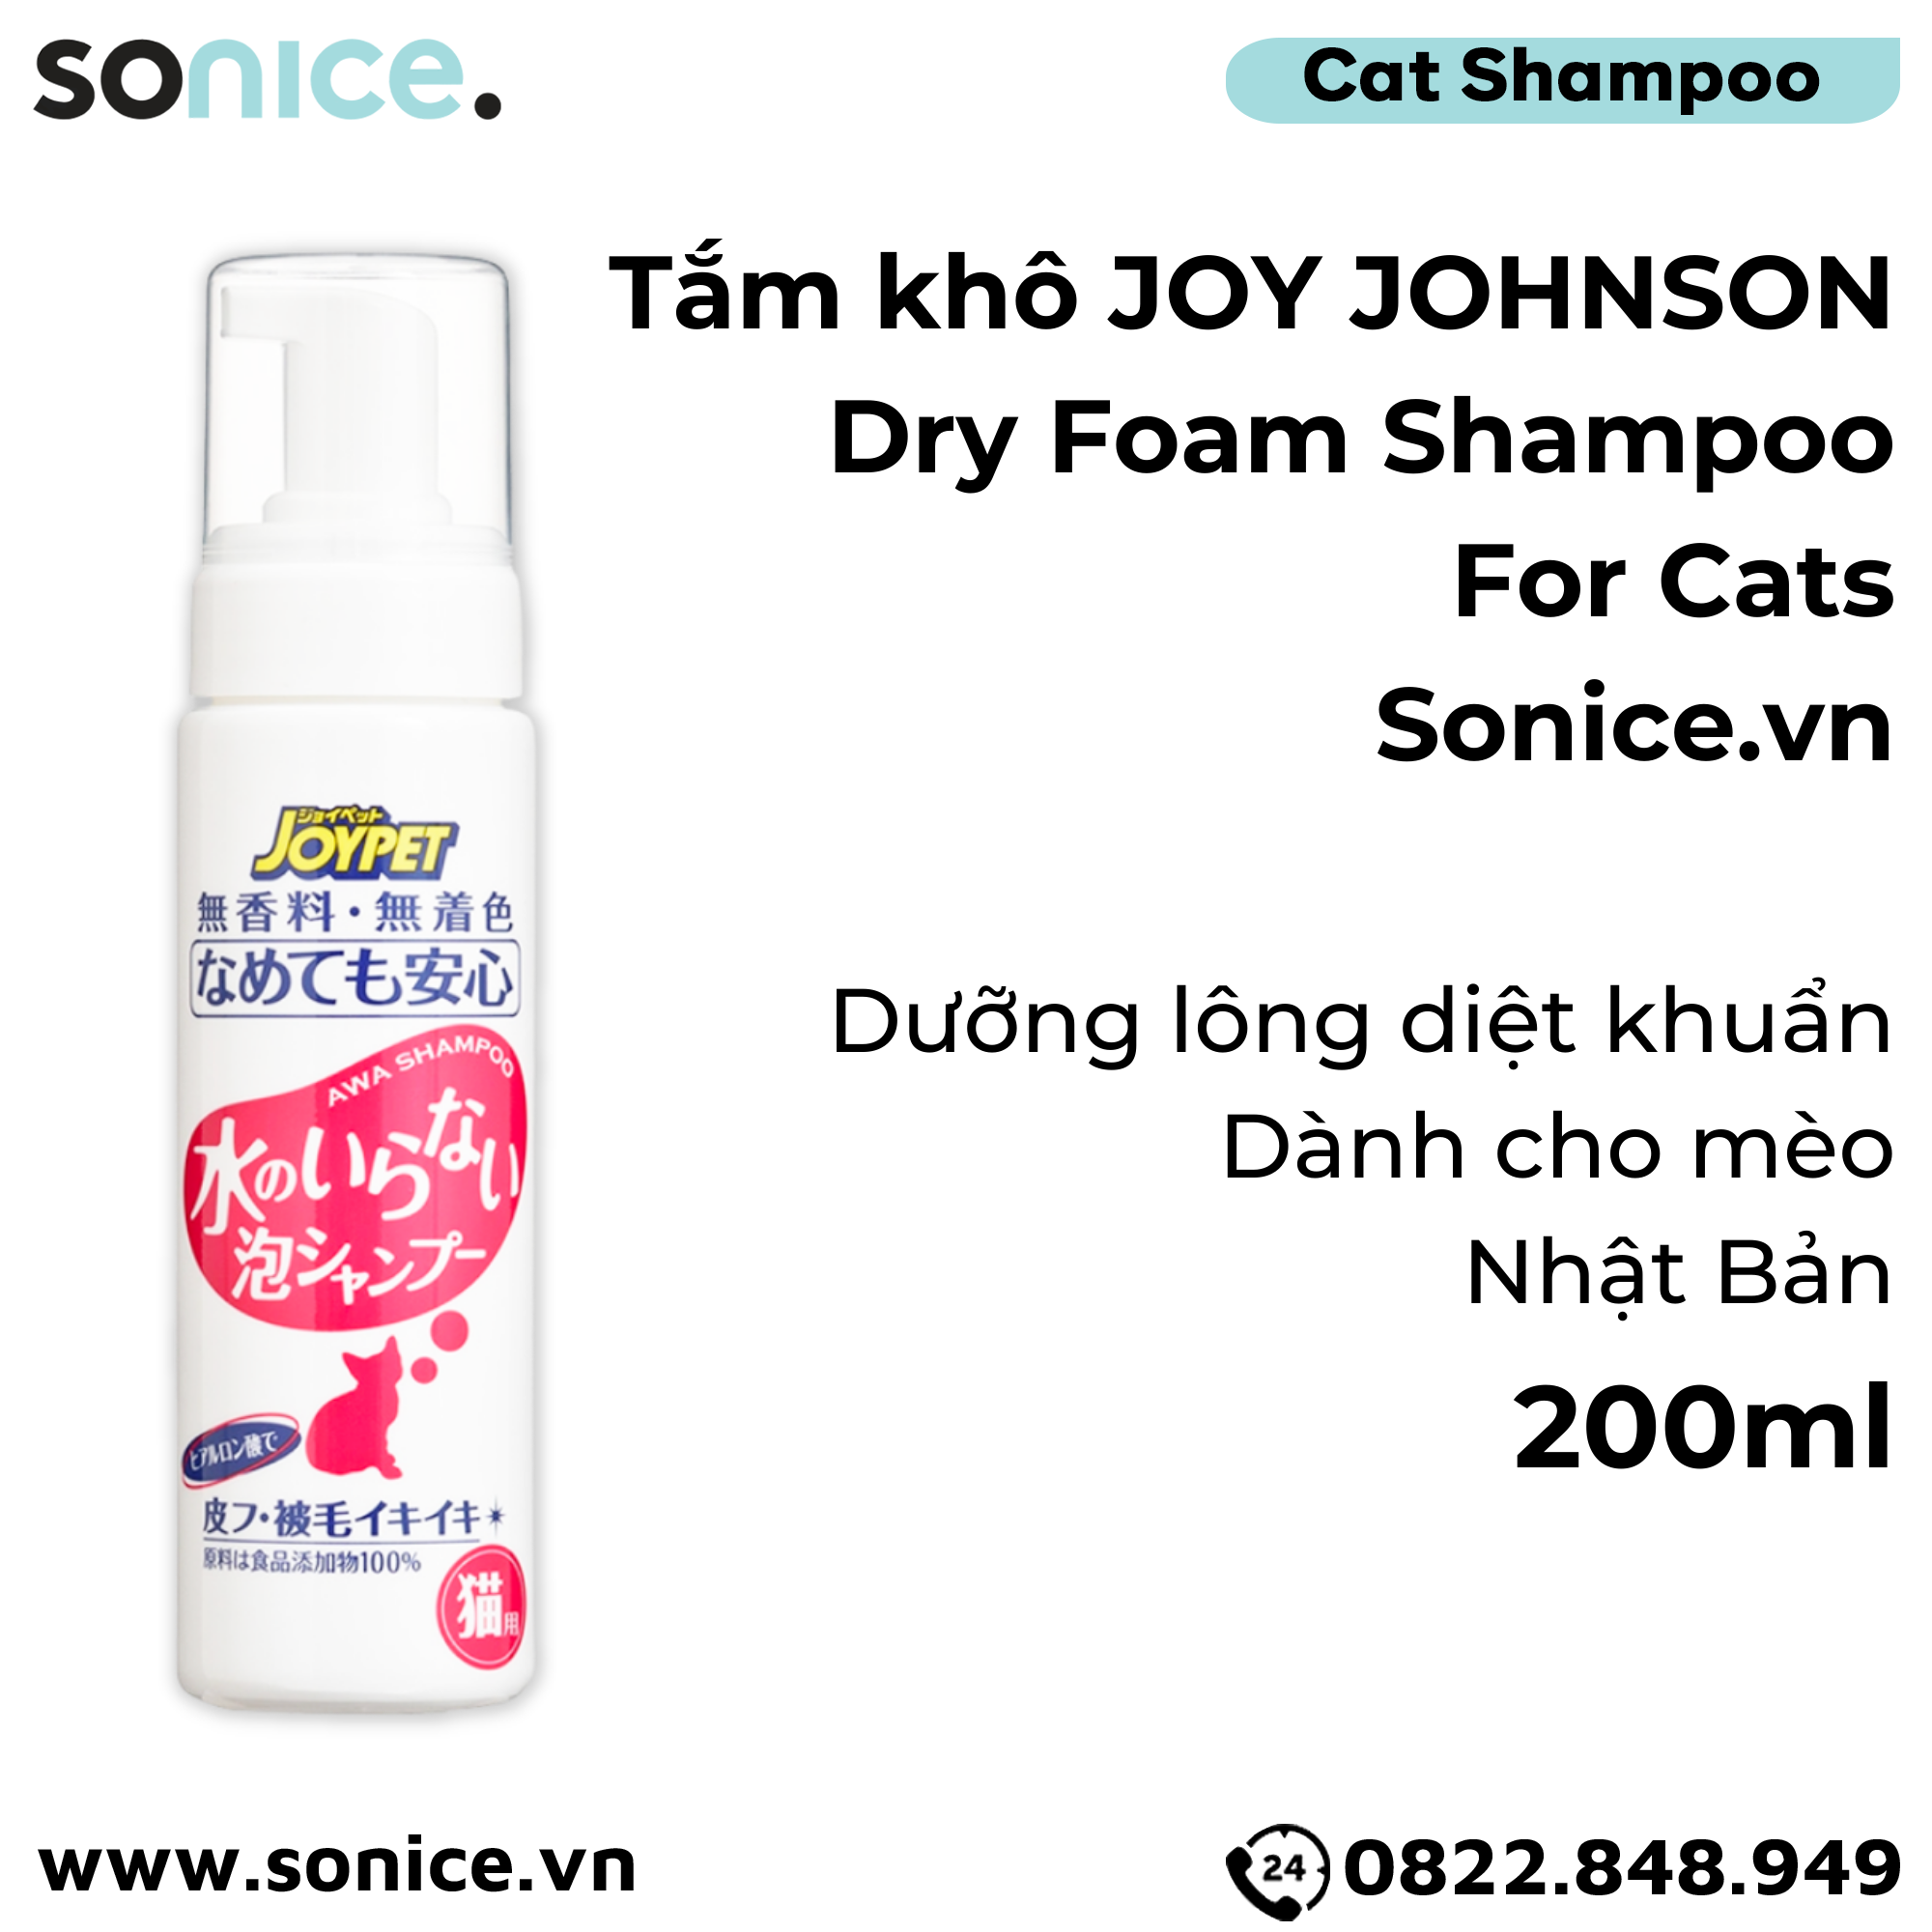  Tắm khô Joy Johnson Dry Foam Shampoo for Cats 200ml - Dưỡng lông diệt khuẩn cho mèo, Nhật Bản - SONICE. 